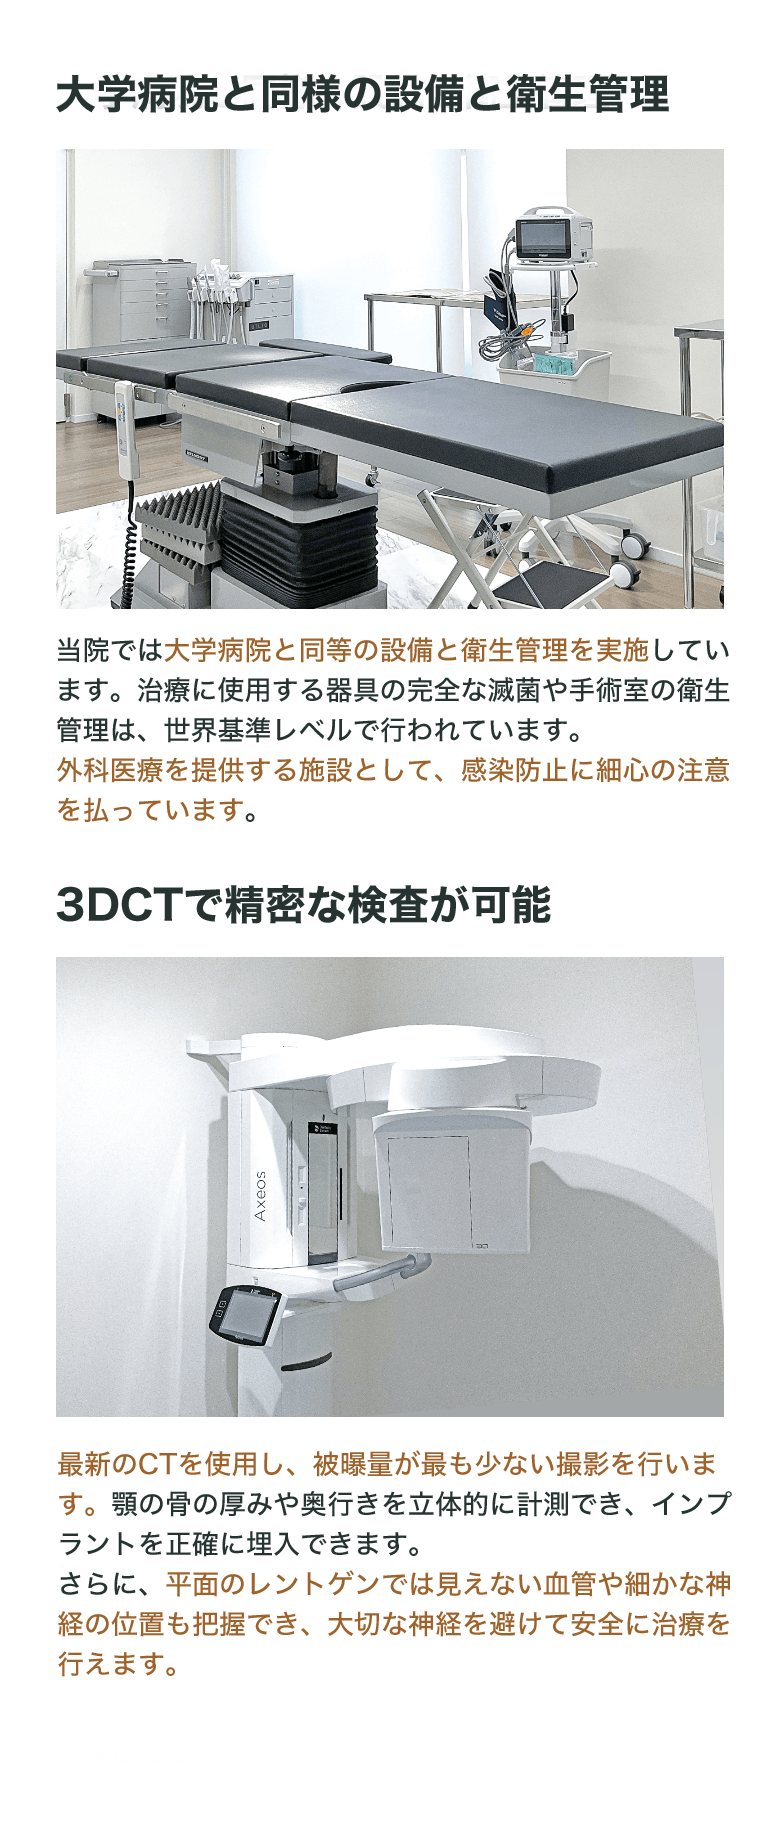 大学病院と同様の設備と衛生管理、3DCTで精密な検査が可能